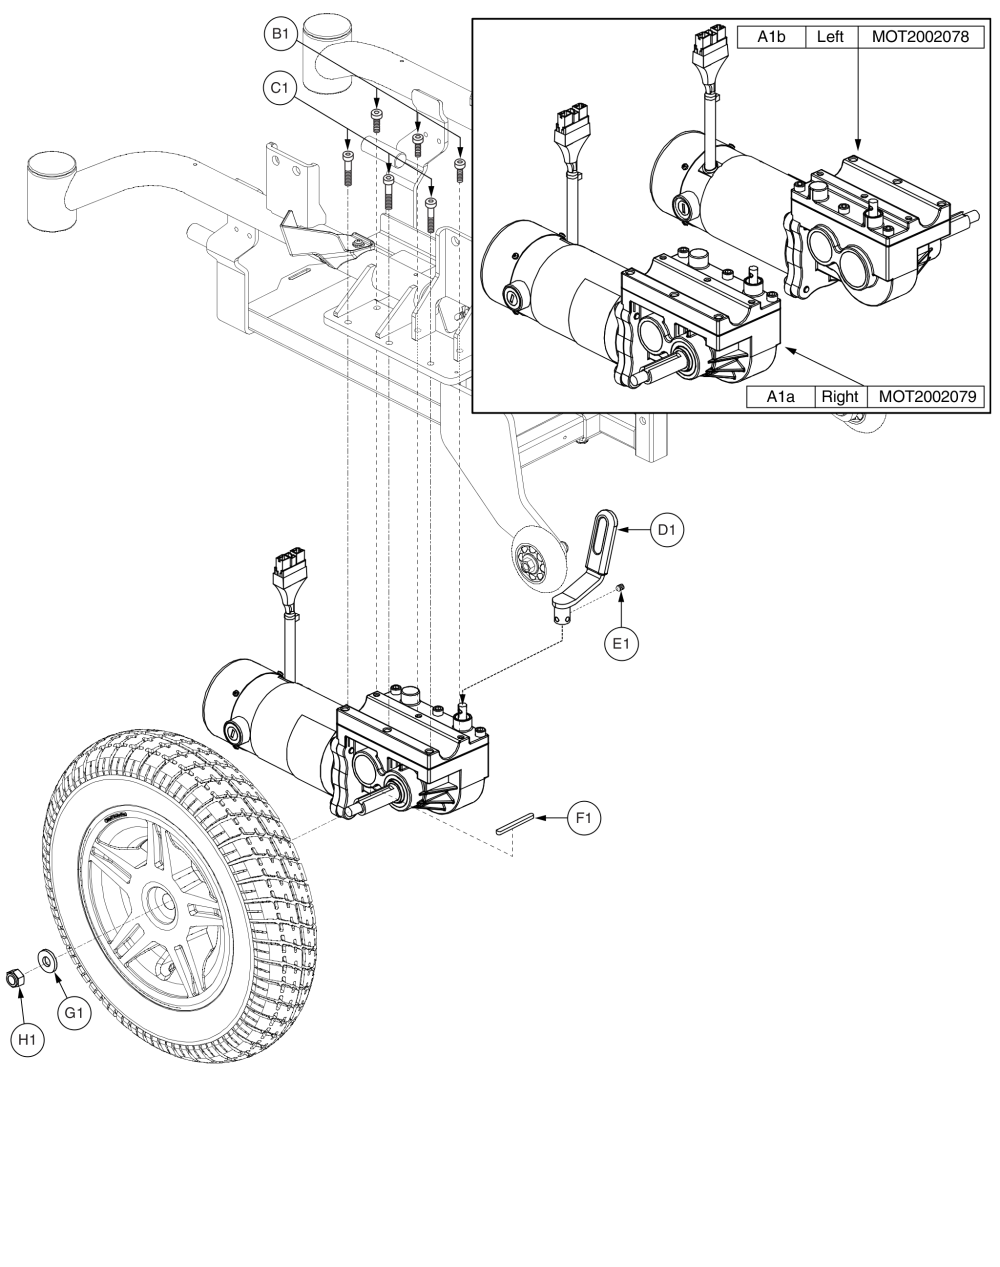 Linx Drive Motor Assy parts diagram